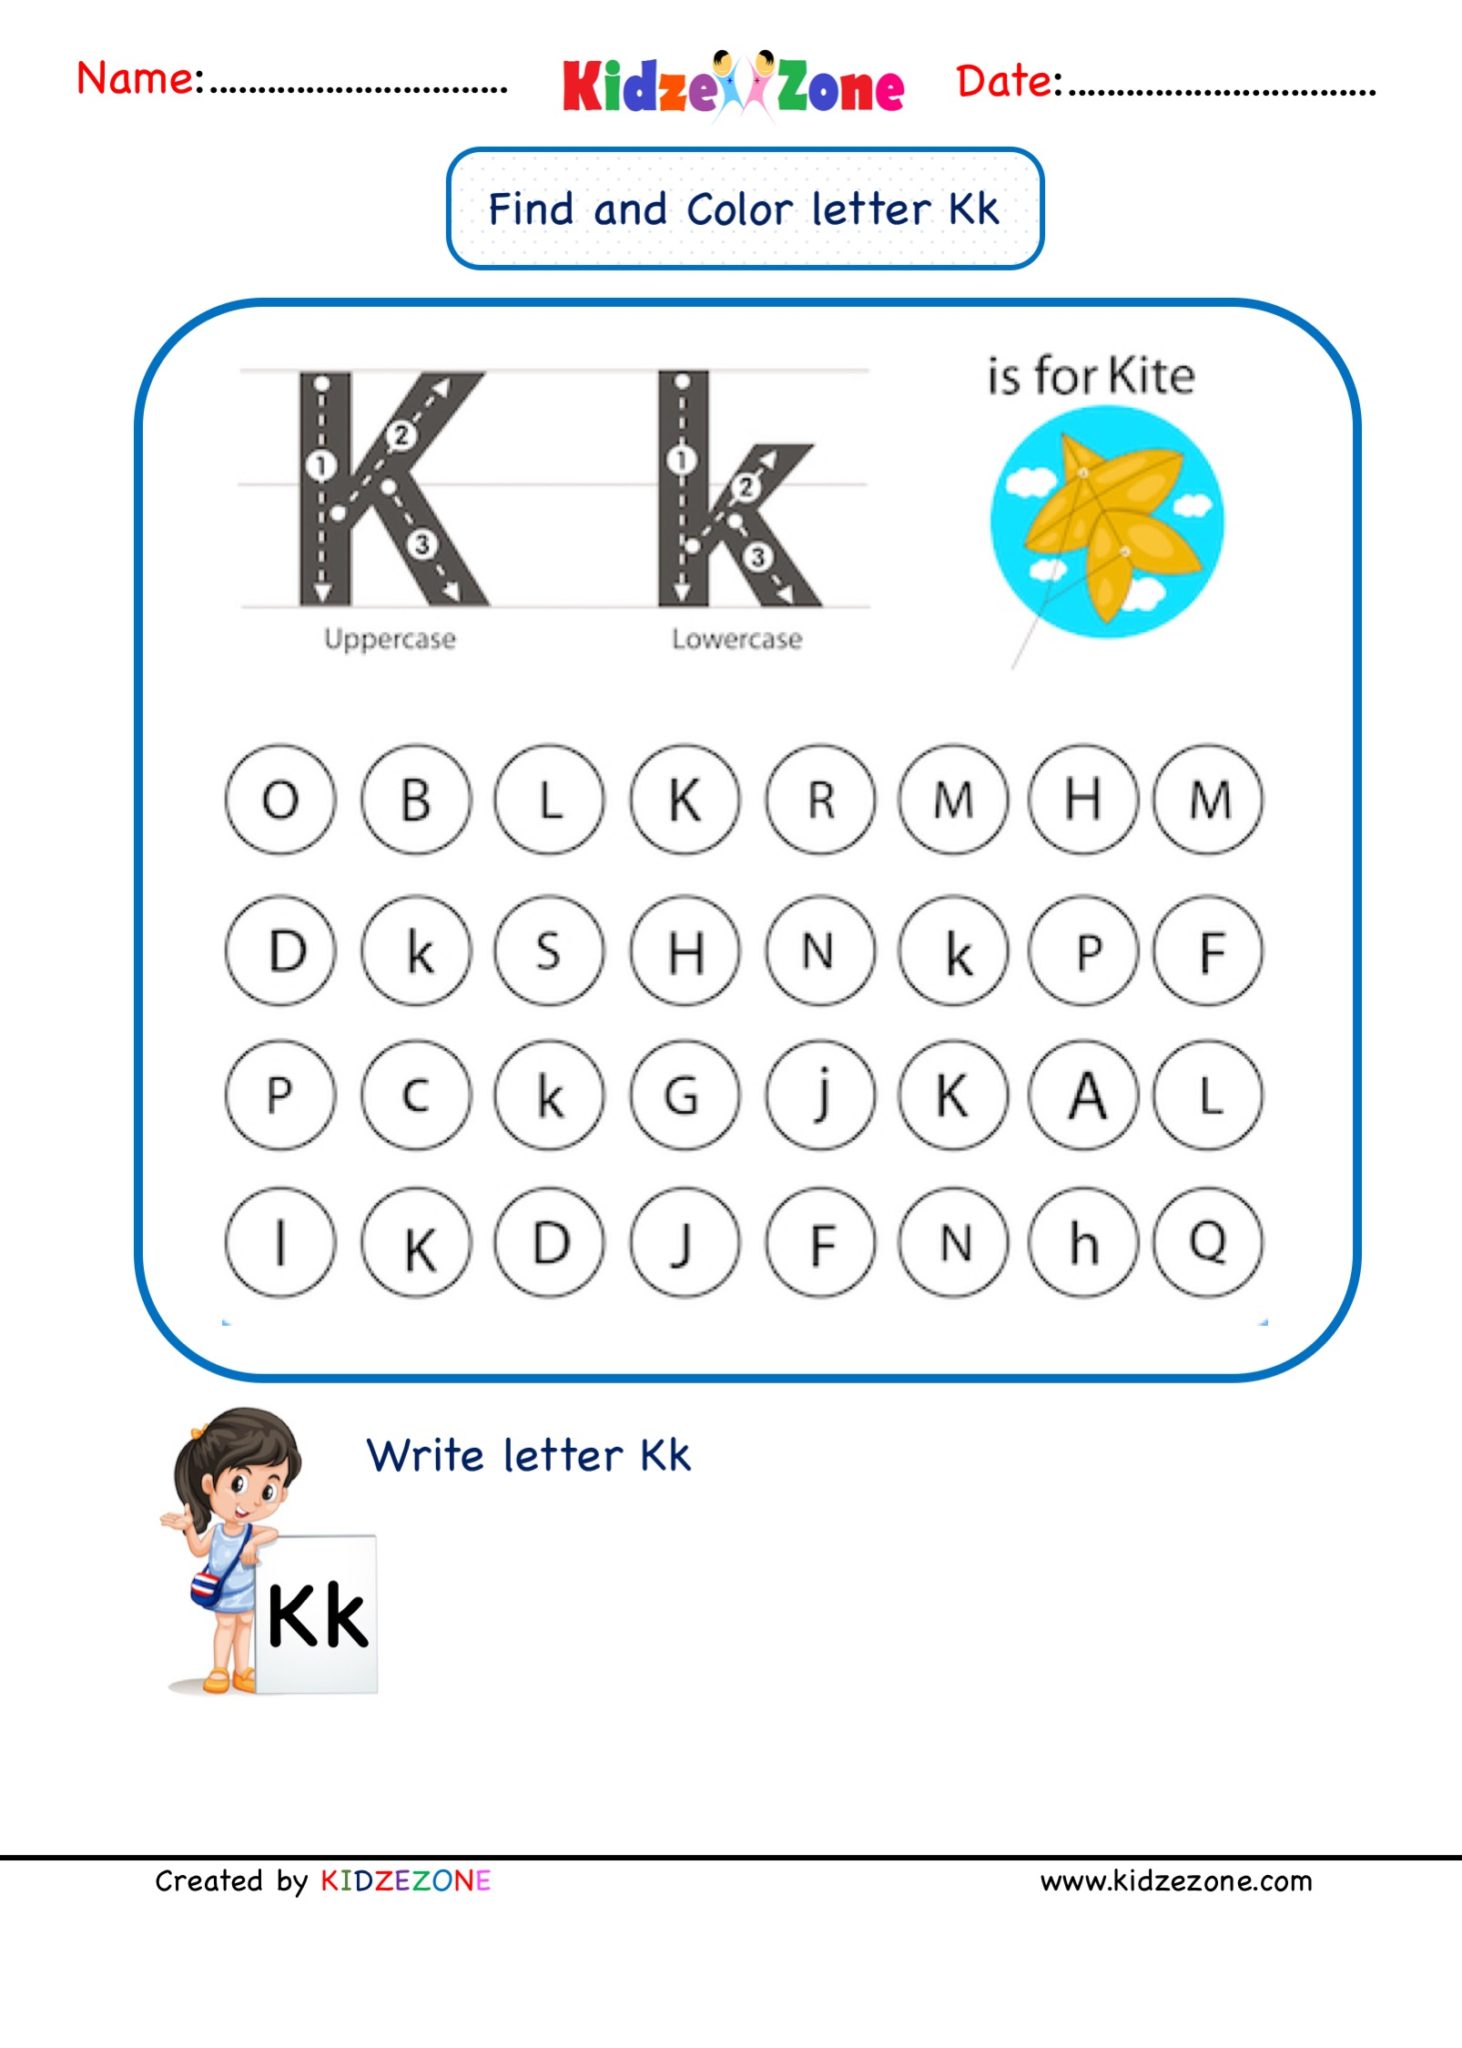 kindergarten-letter-k-worksheets-find-and-color-kidzezone